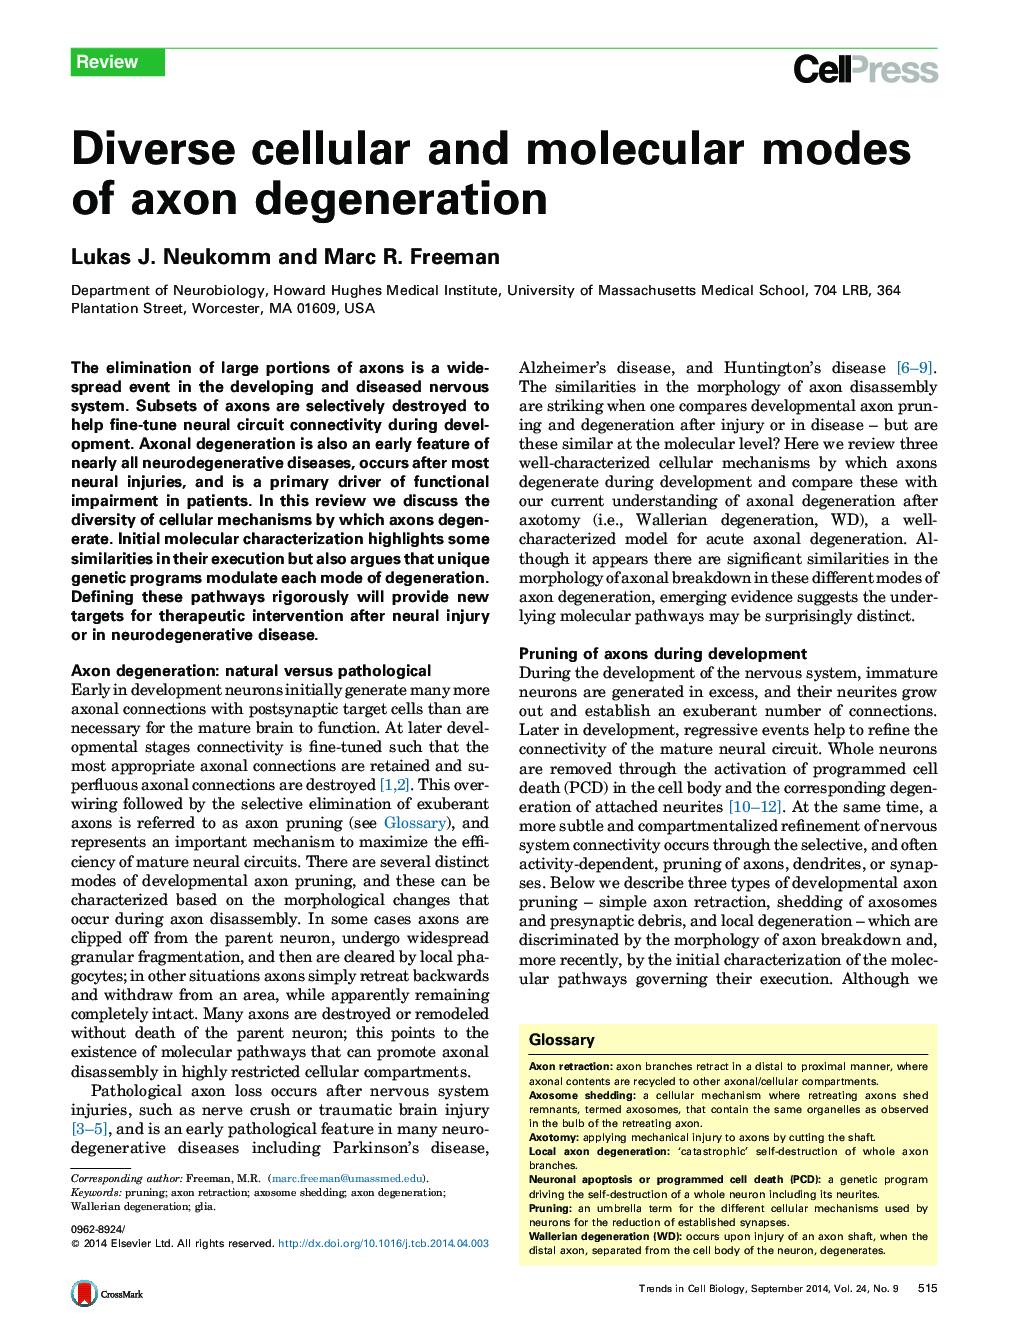 انواع مختلفی از سلول و مولکولی حالت دژنراسیون آکسون 